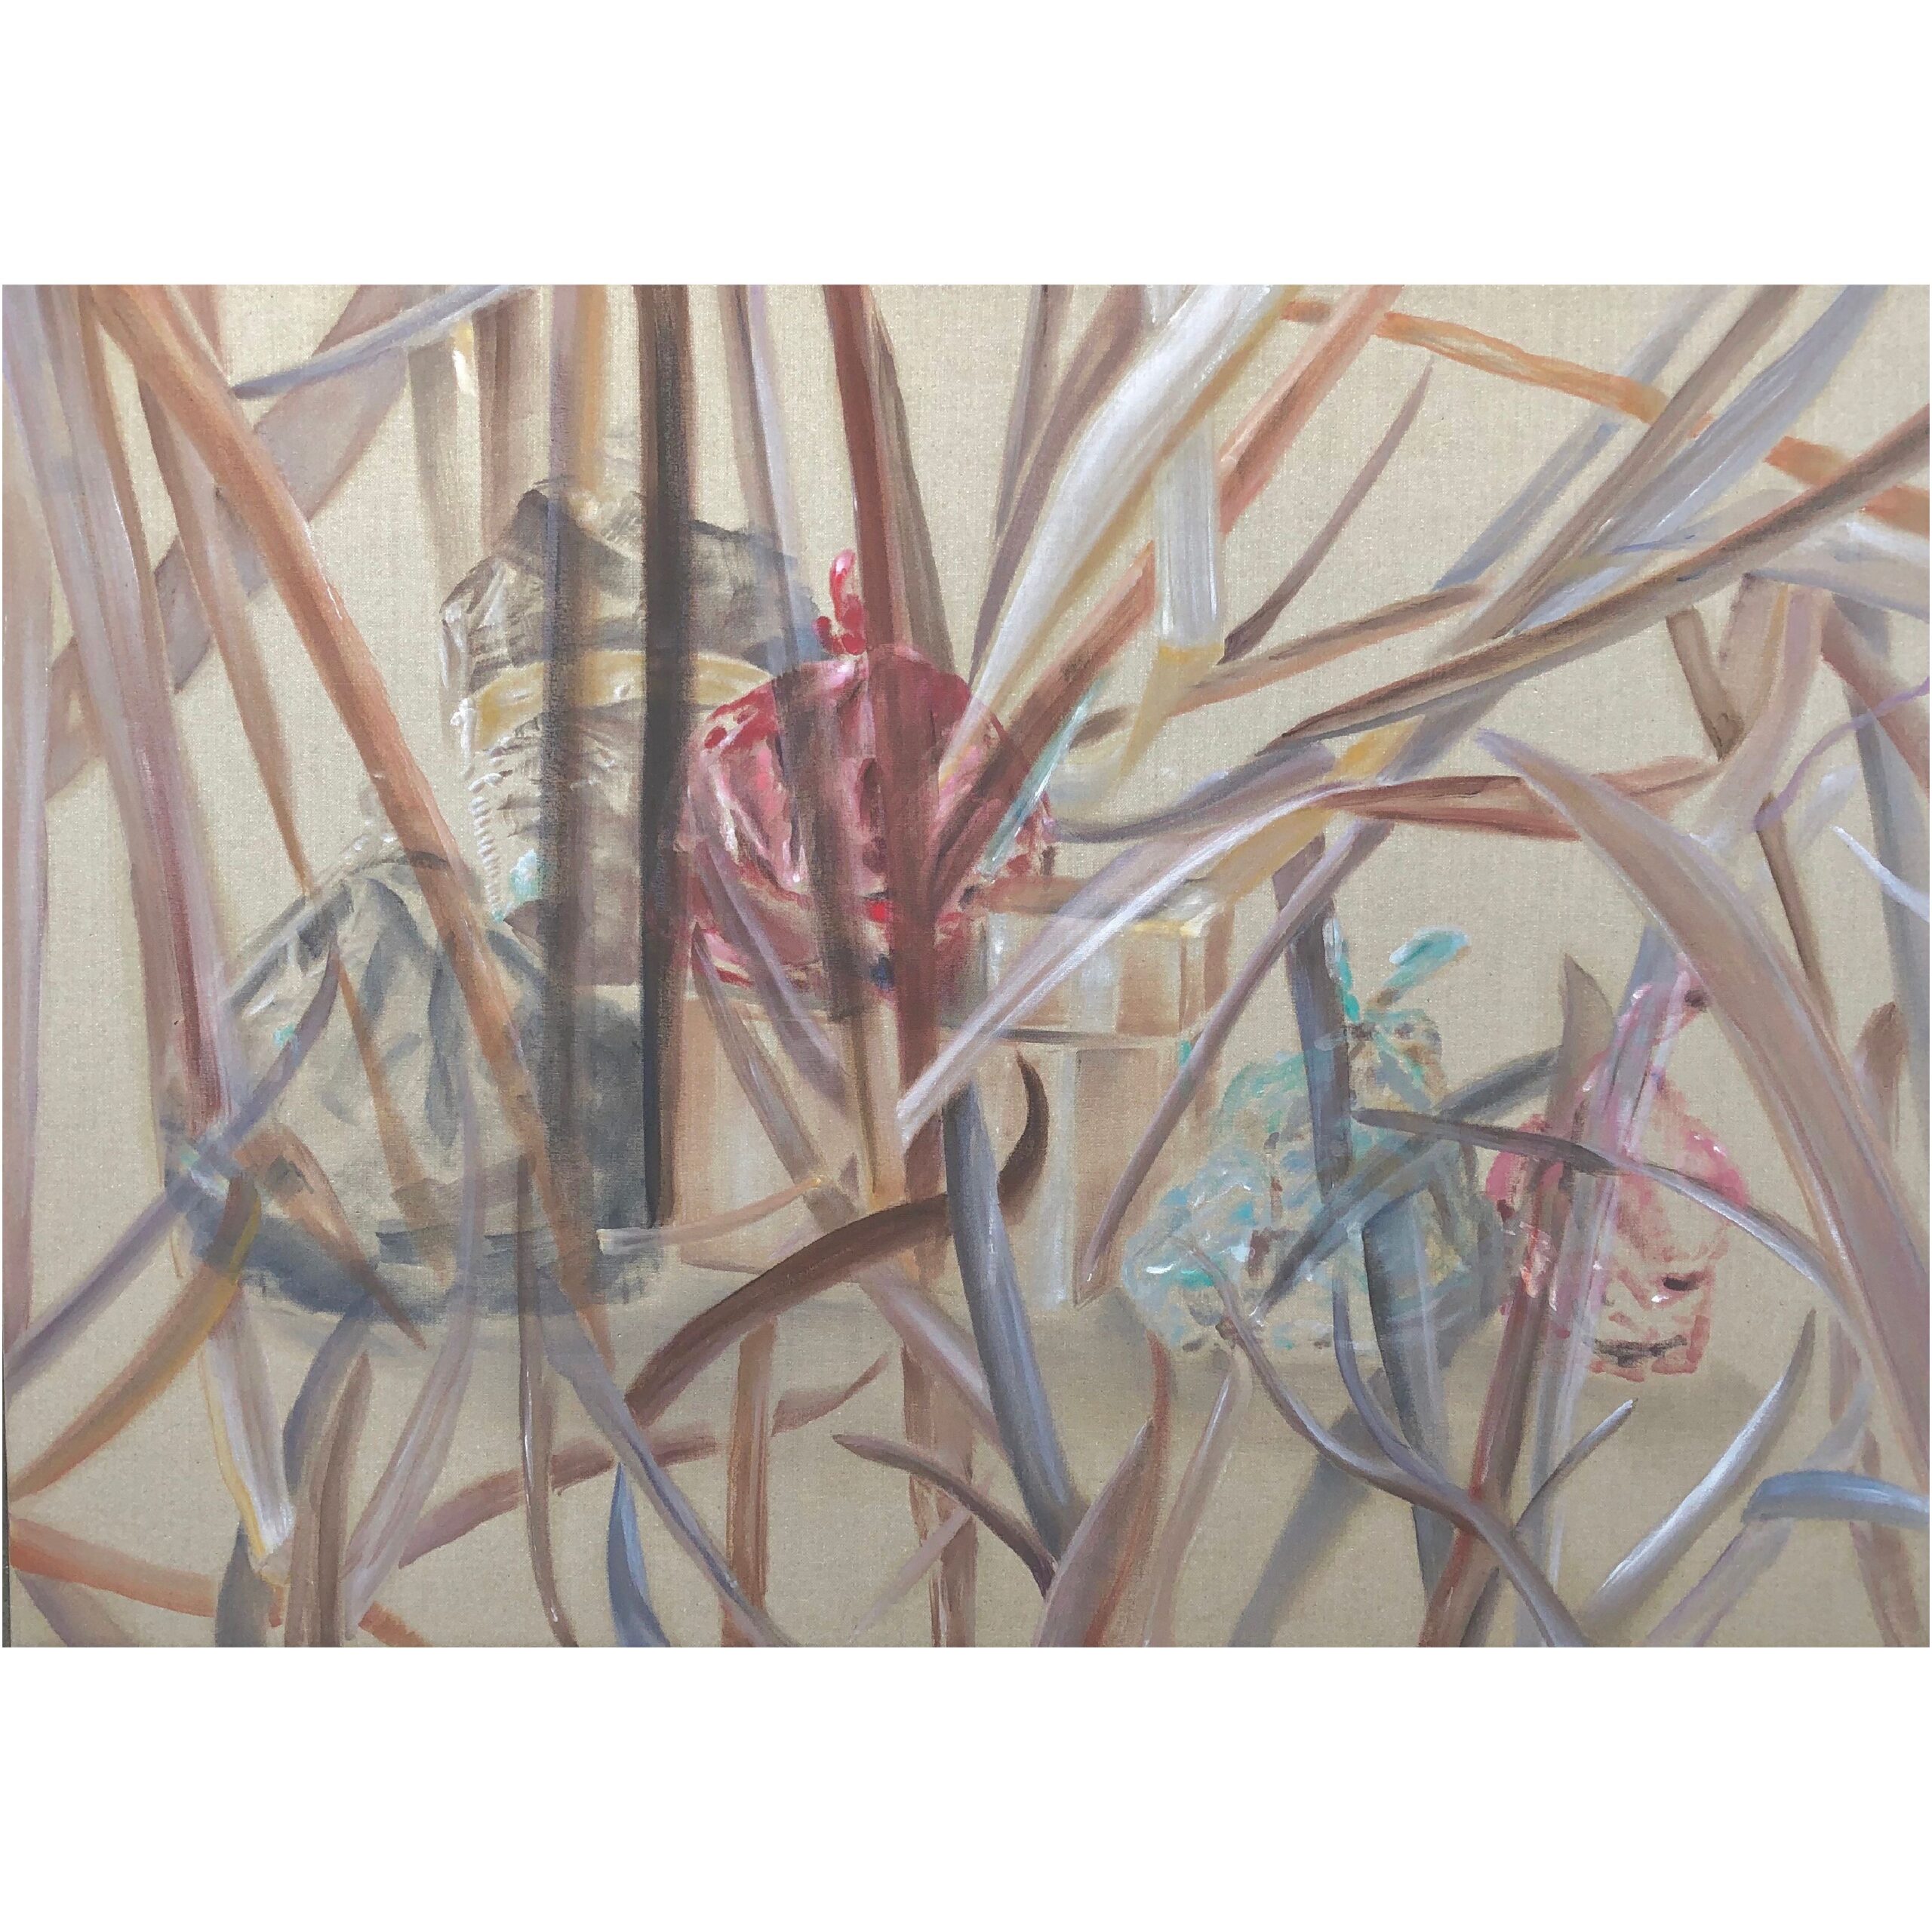 Load II, oil on raw canvas, 64x90, Brit Windahl 2019